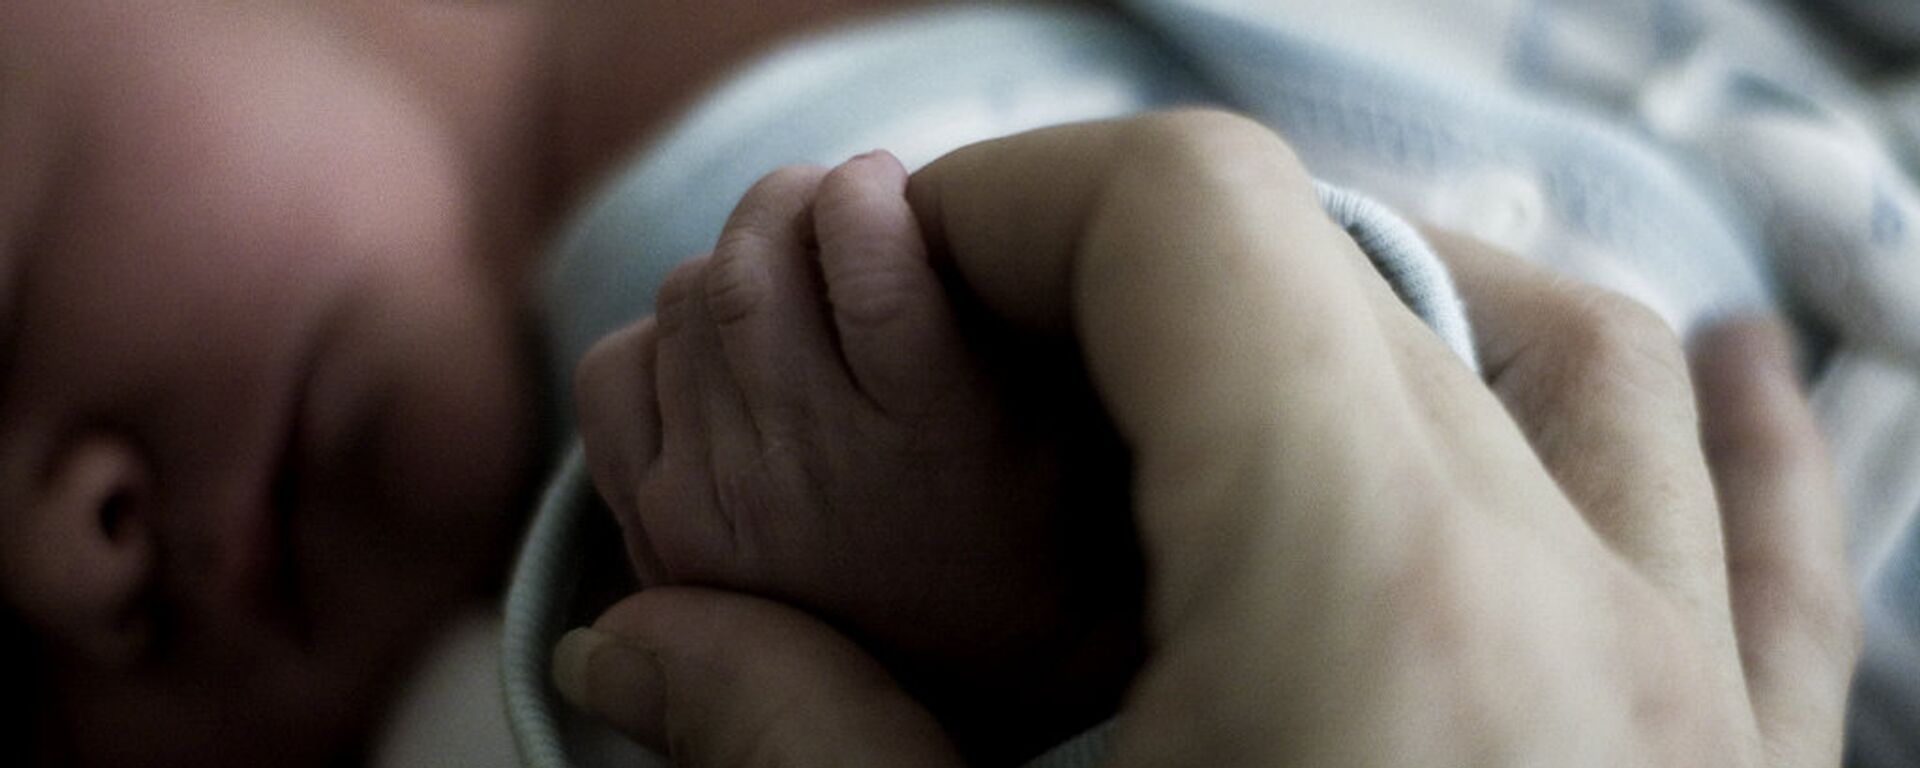 Мать держит руку новорожденного ребенка. Архивное фото - Sputnik Грузия, 1920, 02.04.2021